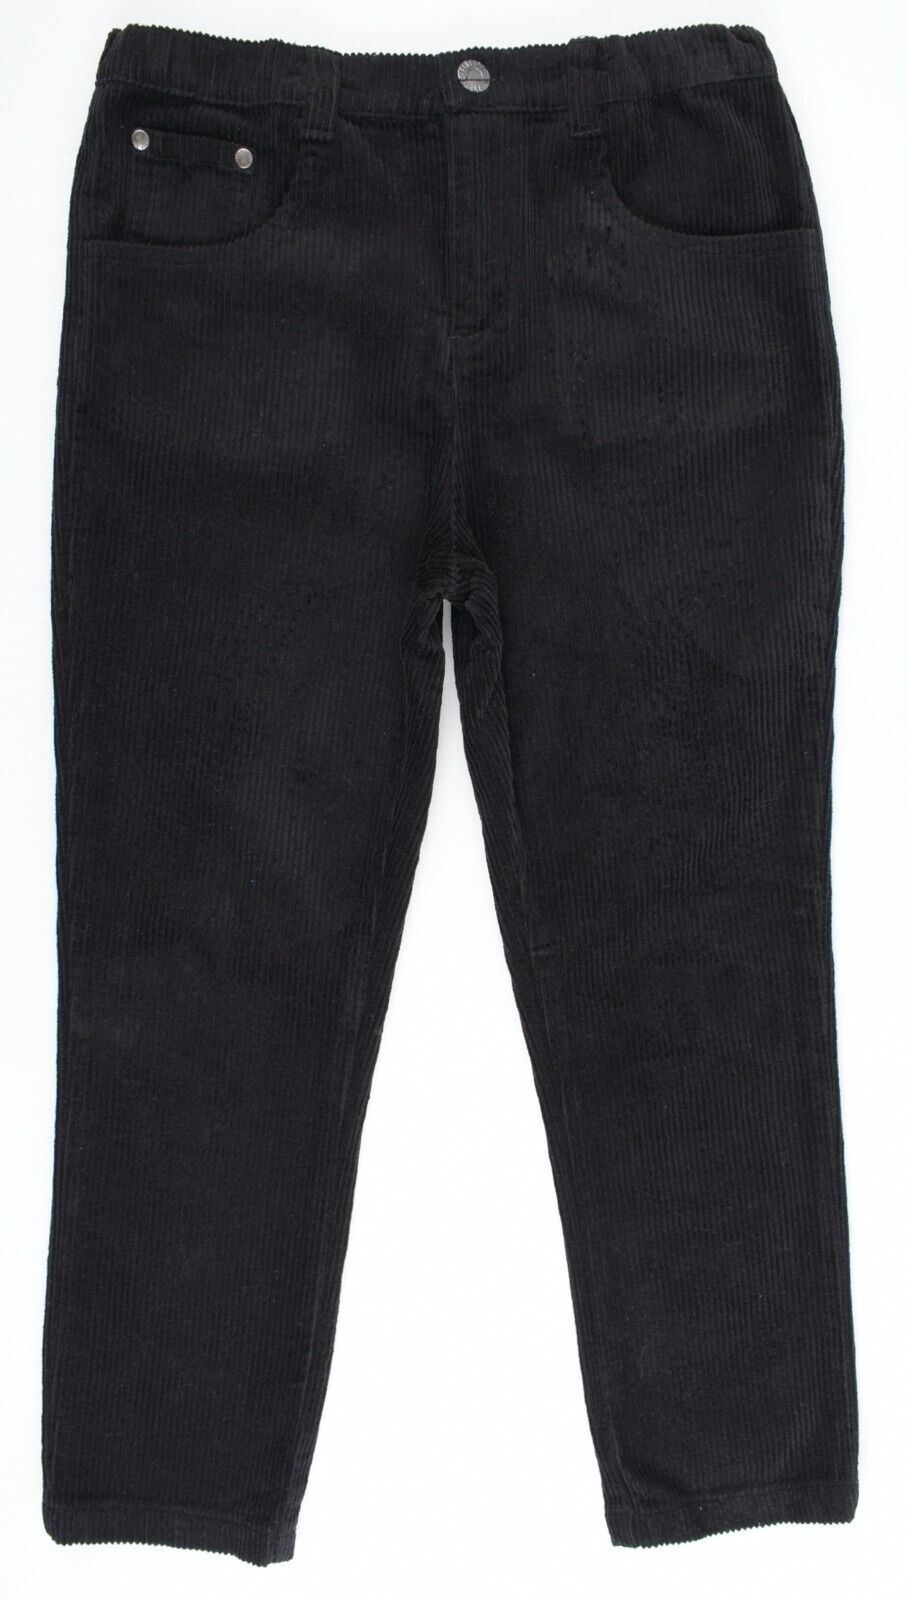 FIRETRAP Boys' Kids' Corduroy Trousers Pants, Black, size 11-12 years